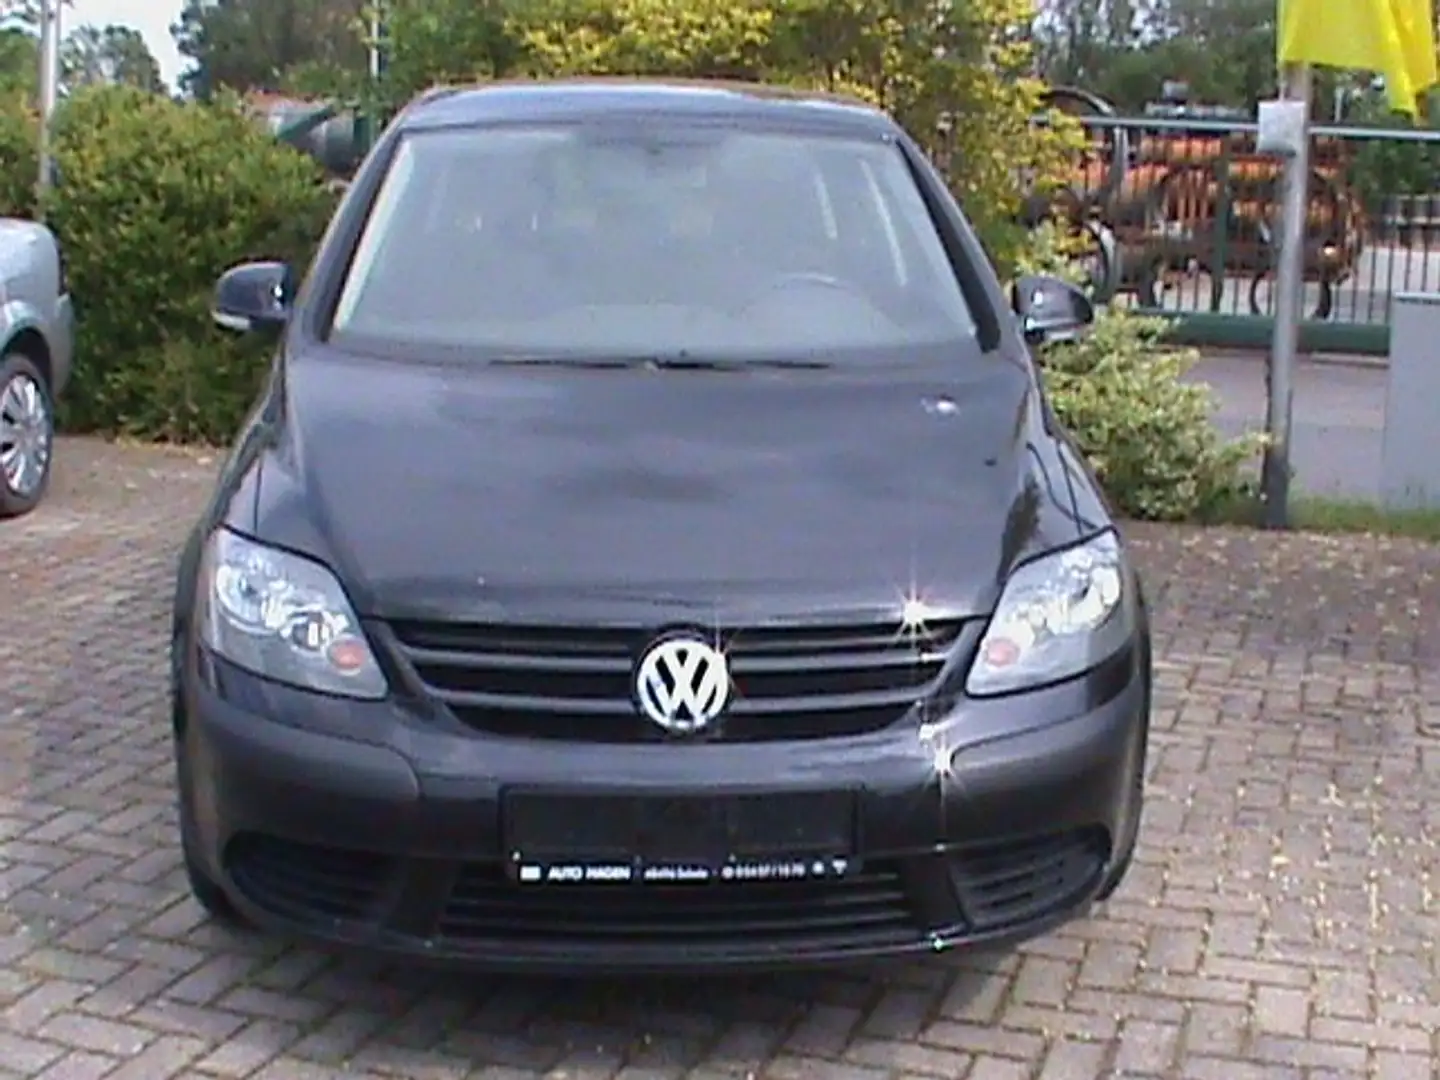 Volkswagen Golf Plus Limousine in Schwarz gebraucht in Schale für € 3.890,-